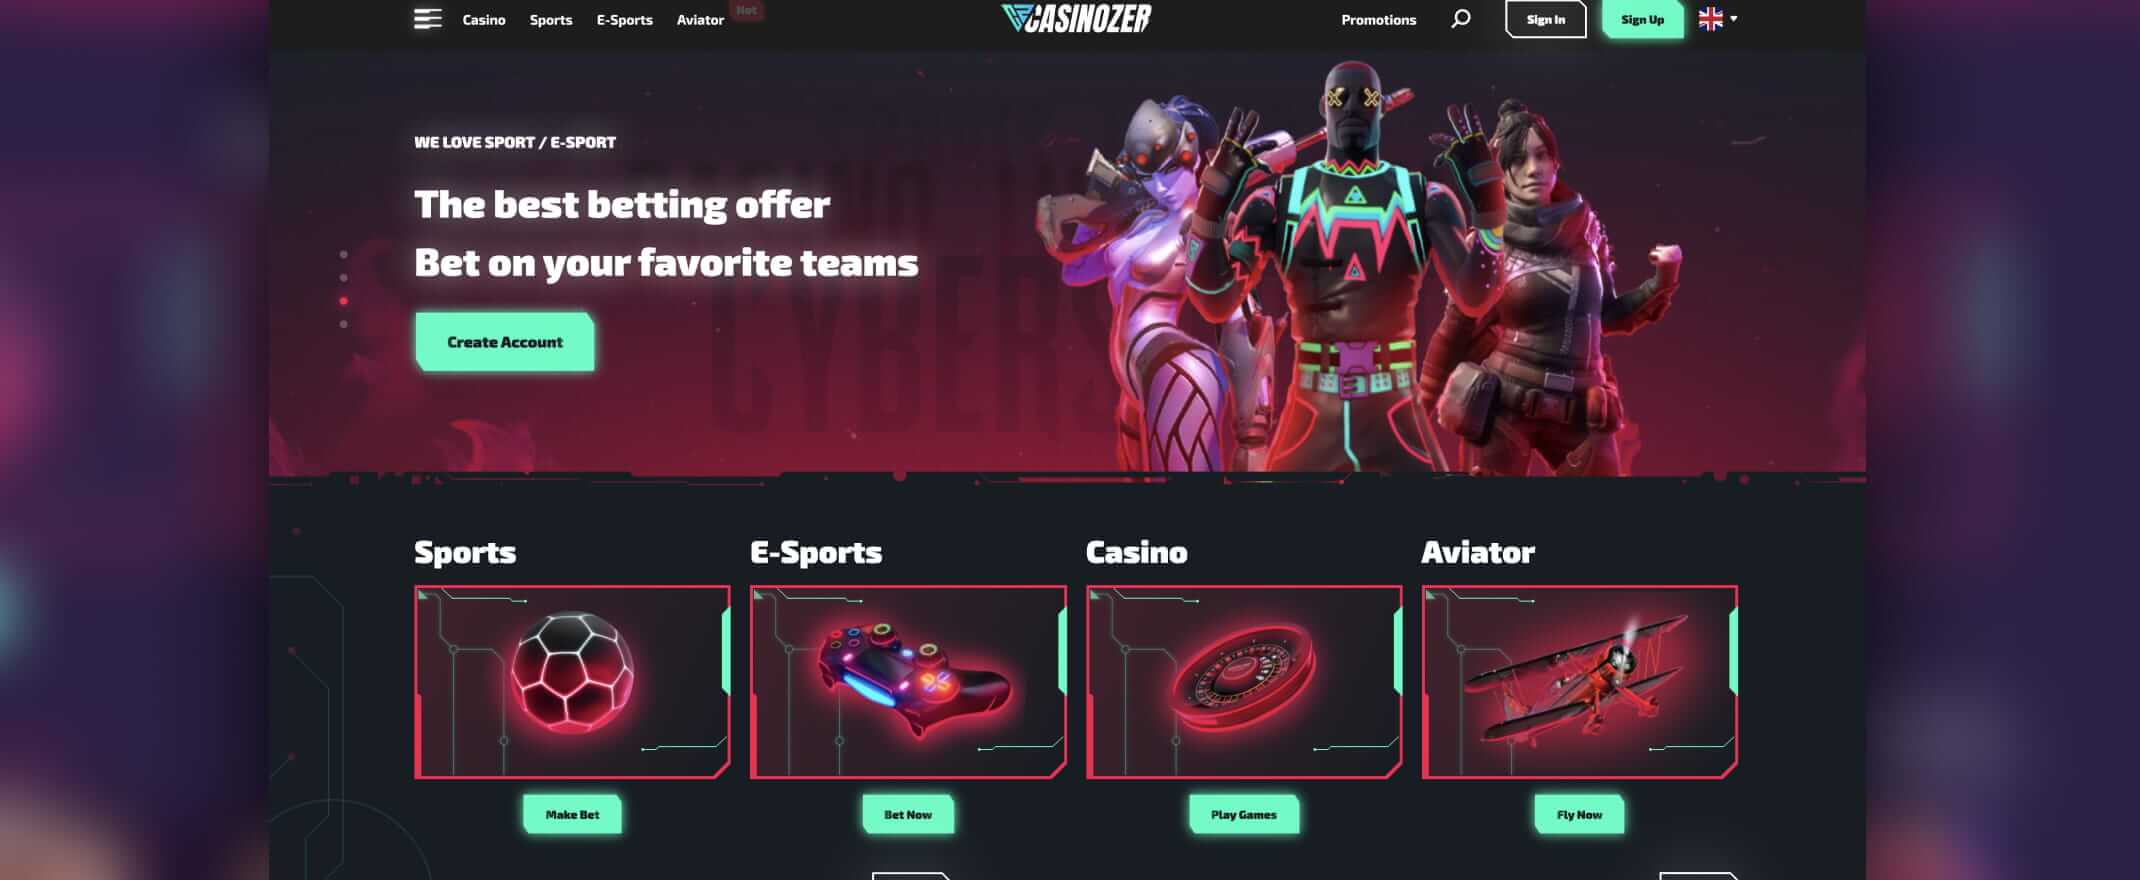 Casinozer homepage screenshot